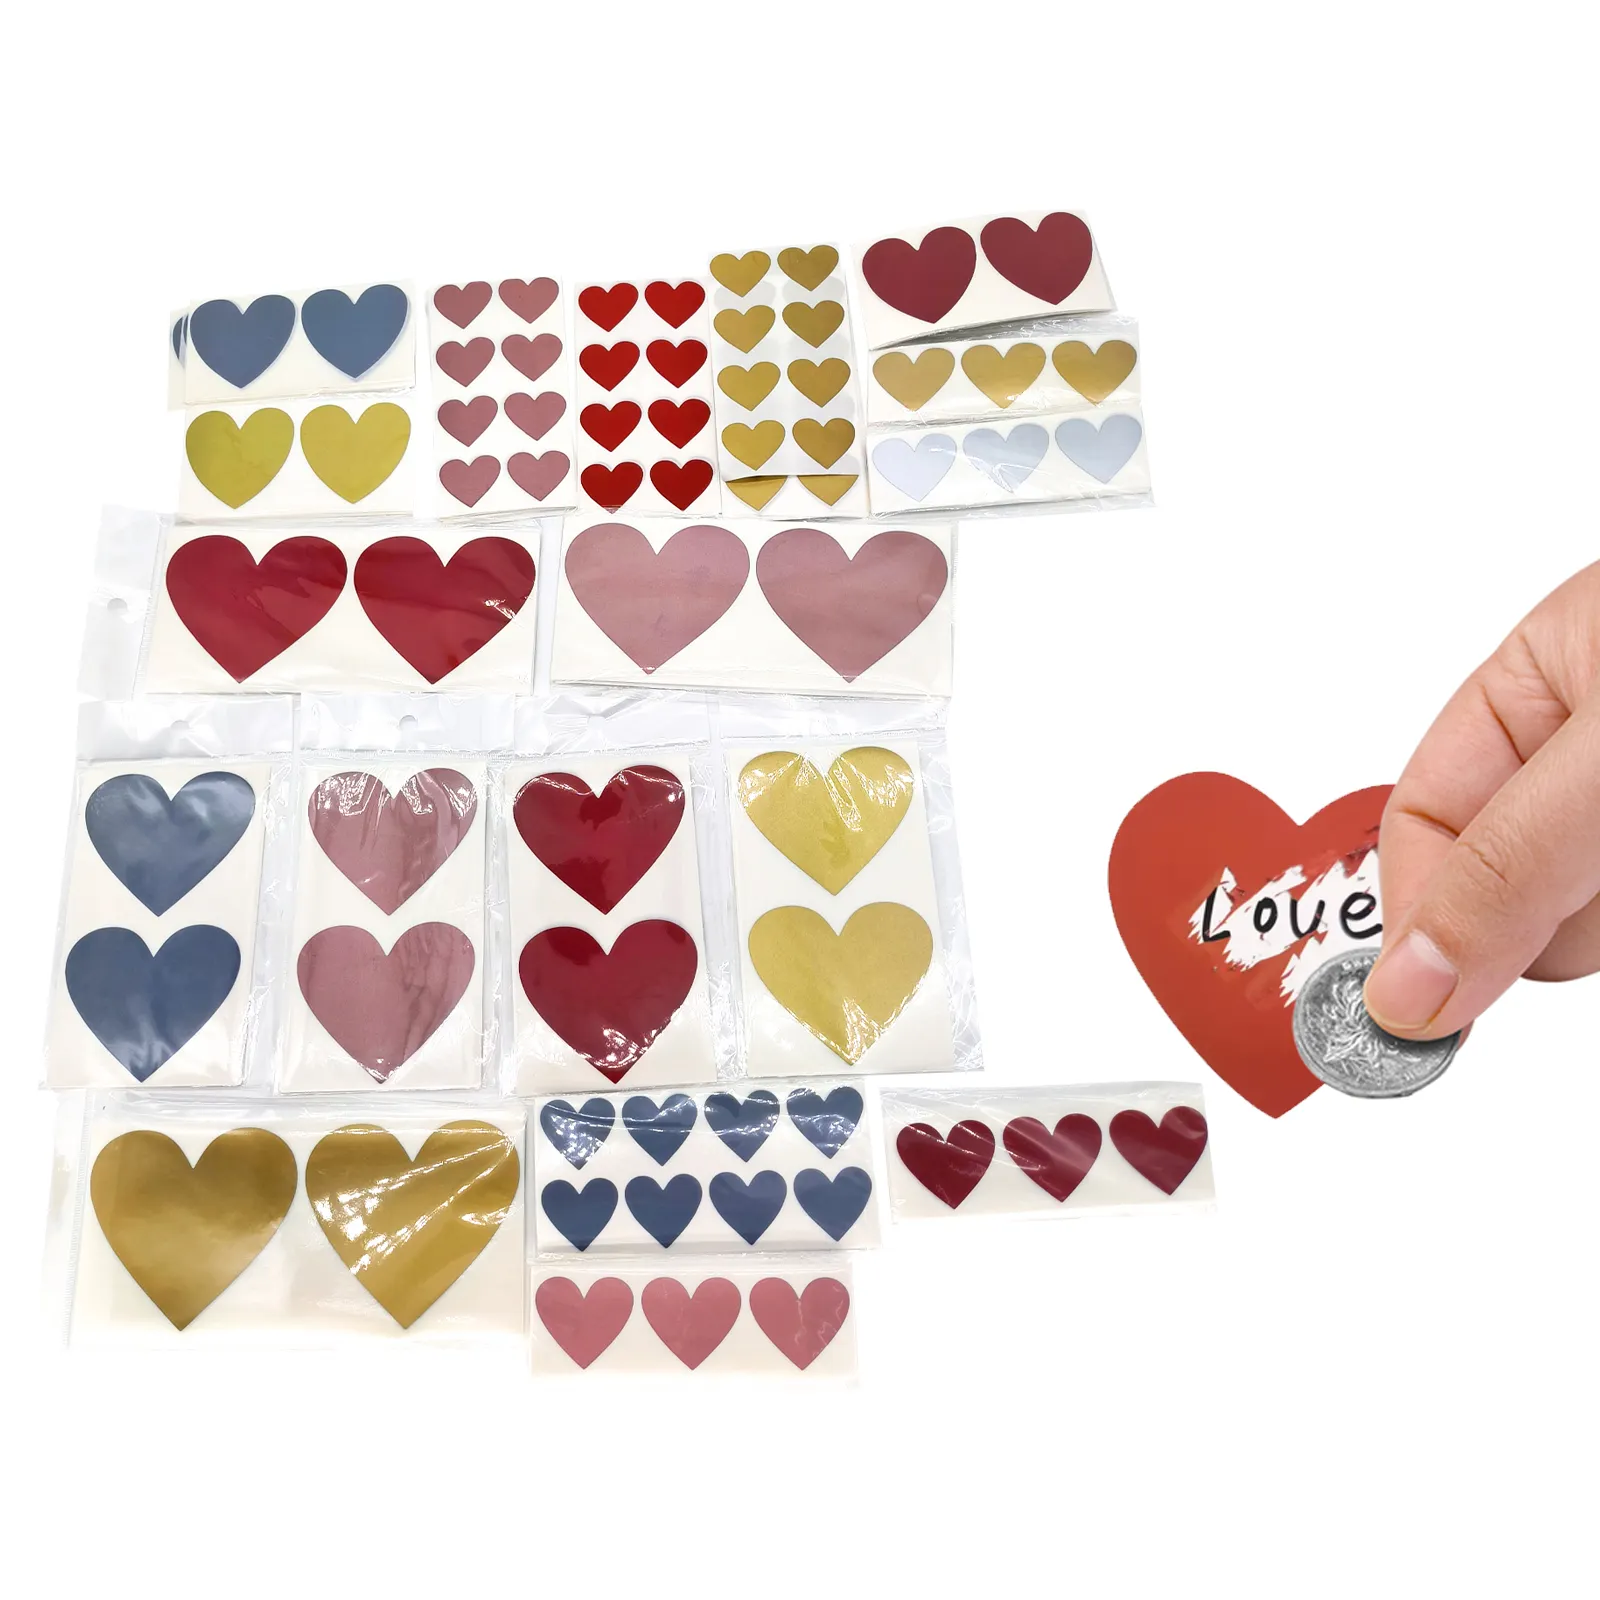 Etichette gratta e vinci a forma di cuore d'amore personalizzate vuote per il messaggio di nozze del gioco di casa della copertina del codice segreto